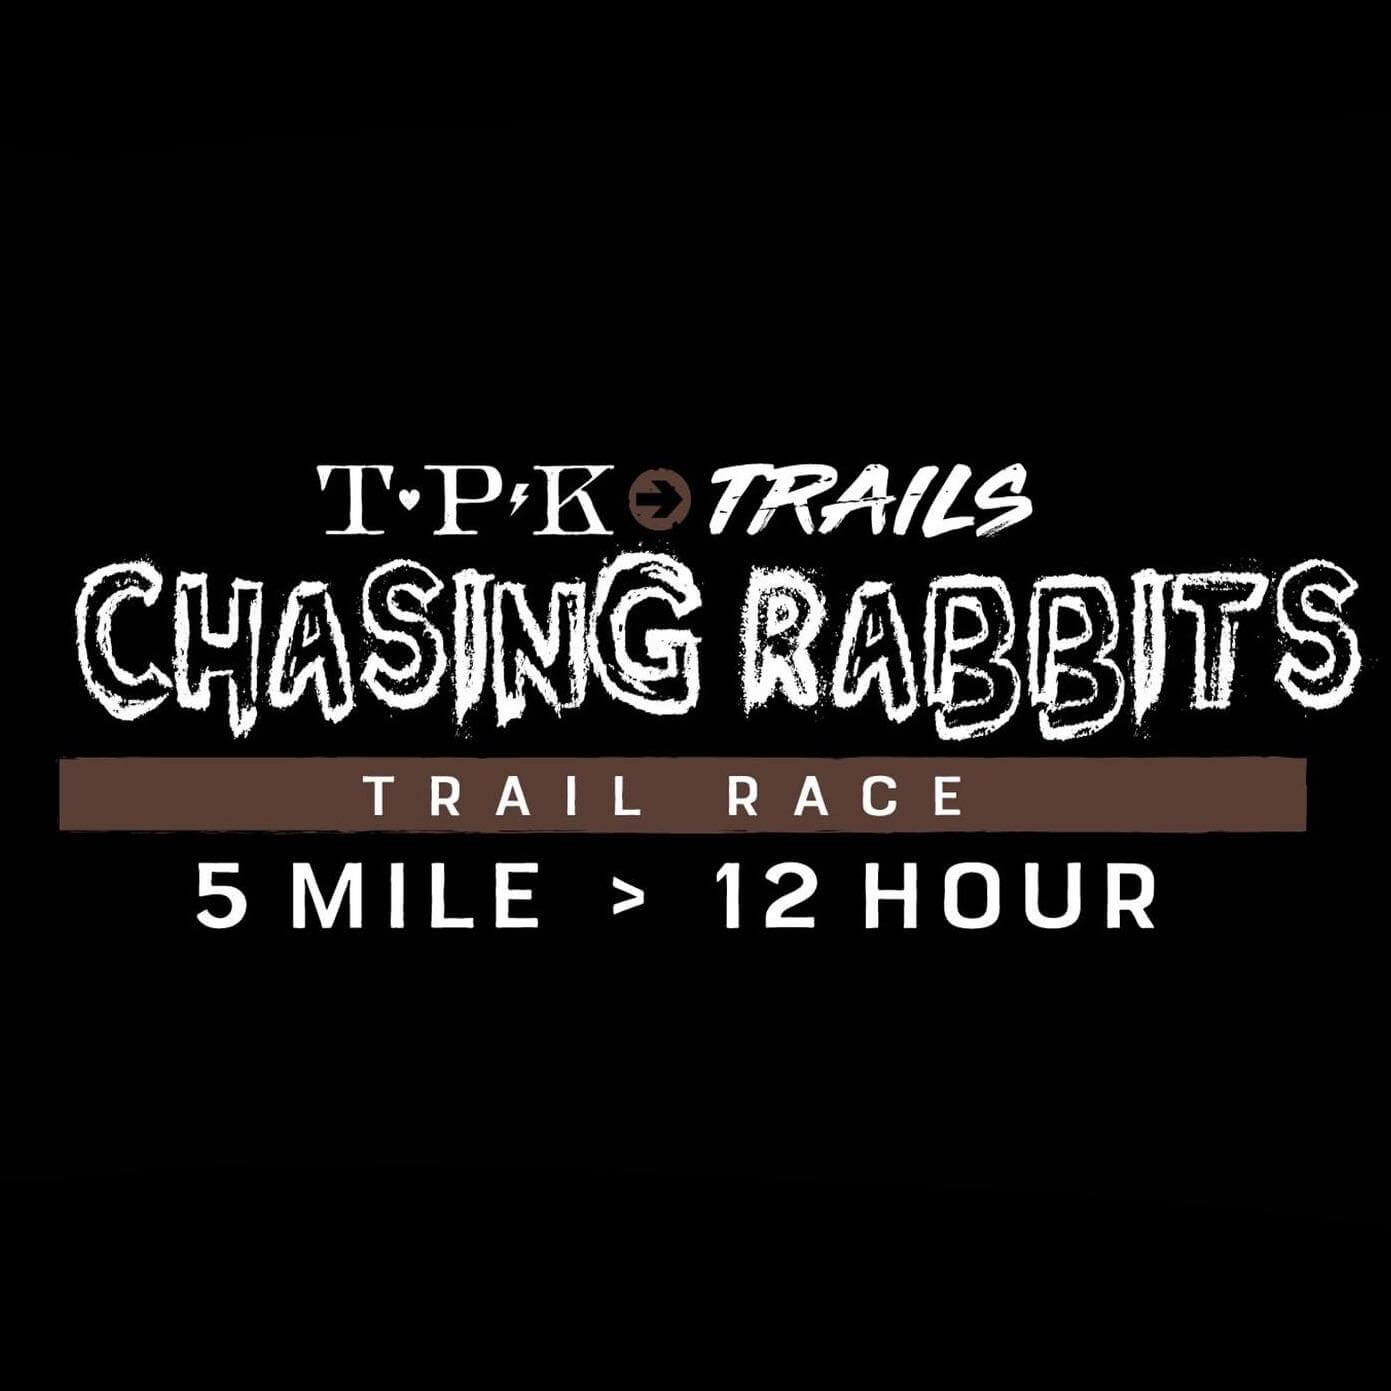 tpk-chasing-rabbits-logo_rH57kNc